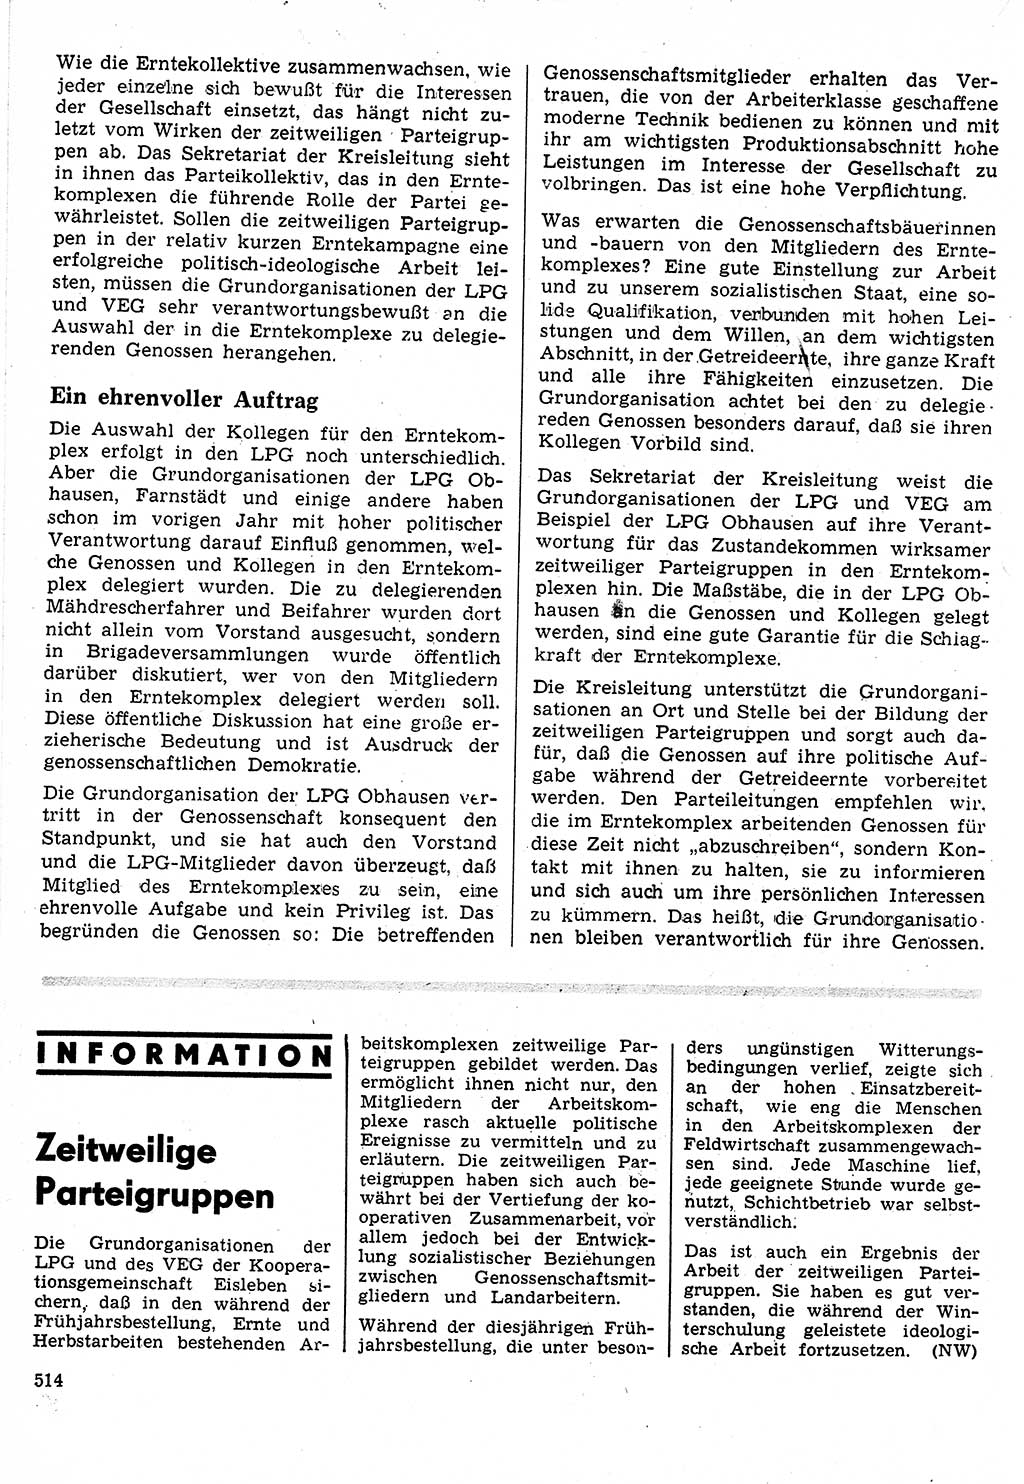 Neuer Weg (NW), Organ des Zentralkomitees (ZK) der SED (Sozialistische Einheitspartei Deutschlands) für Fragen des Parteilebens, 24. Jahrgang [Deutsche Demokratische Republik (DDR)] 1969, Seite 514 (NW ZK SED DDR 1969, S. 514)